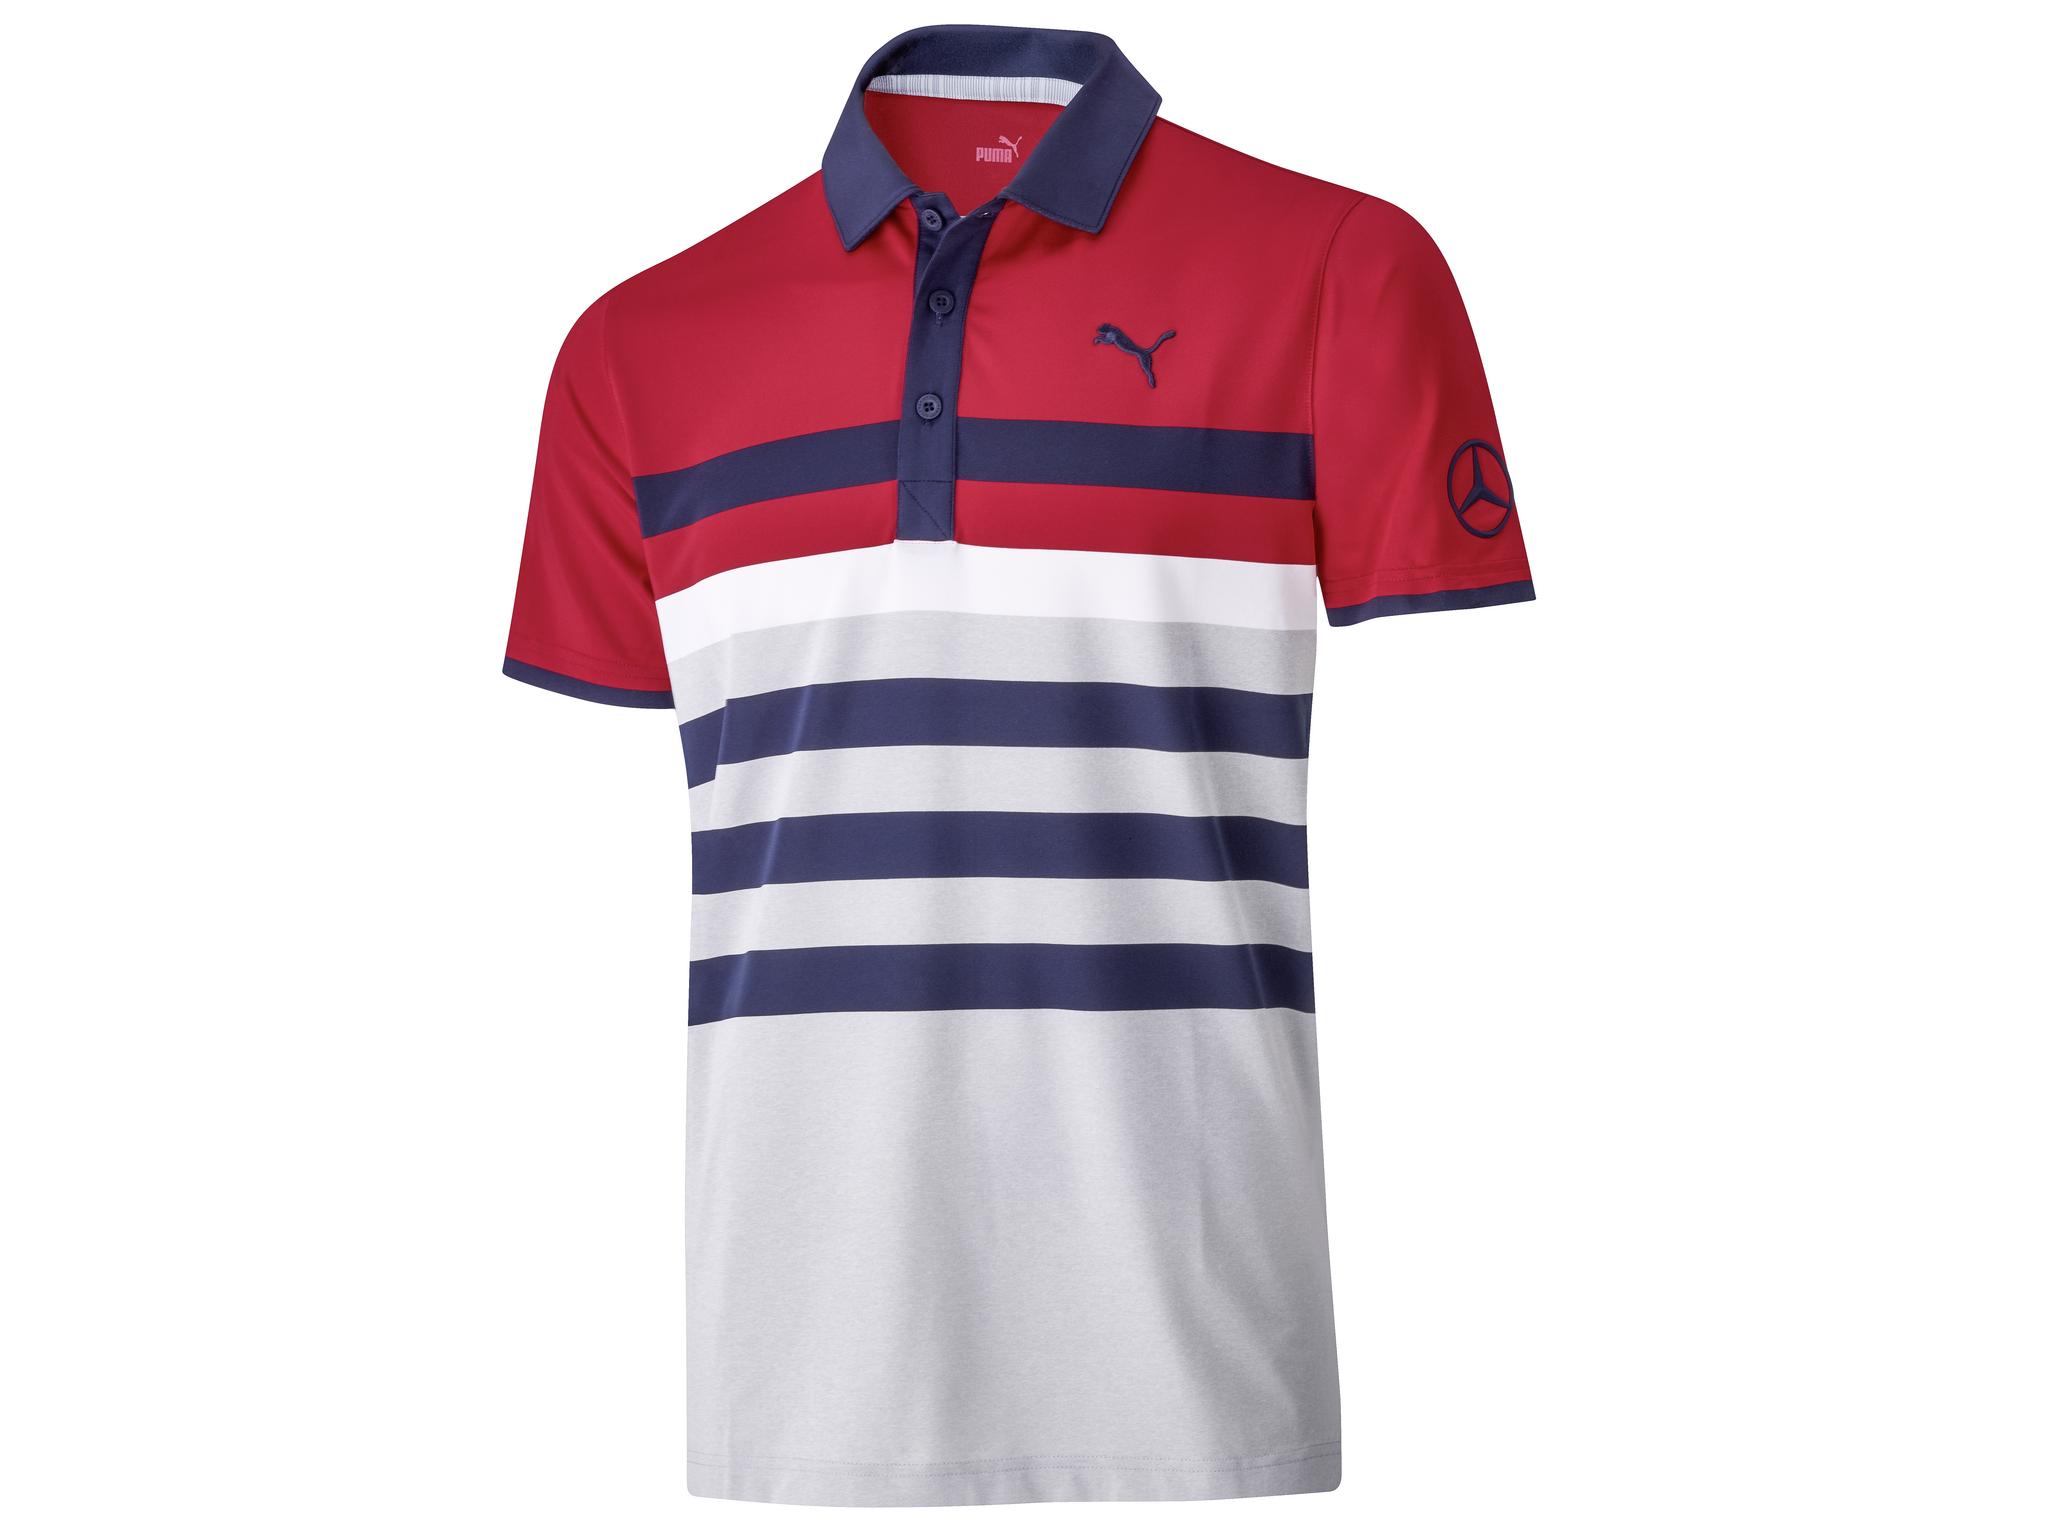 Golf-Poloshirt Herren - rot / weiß, XXL